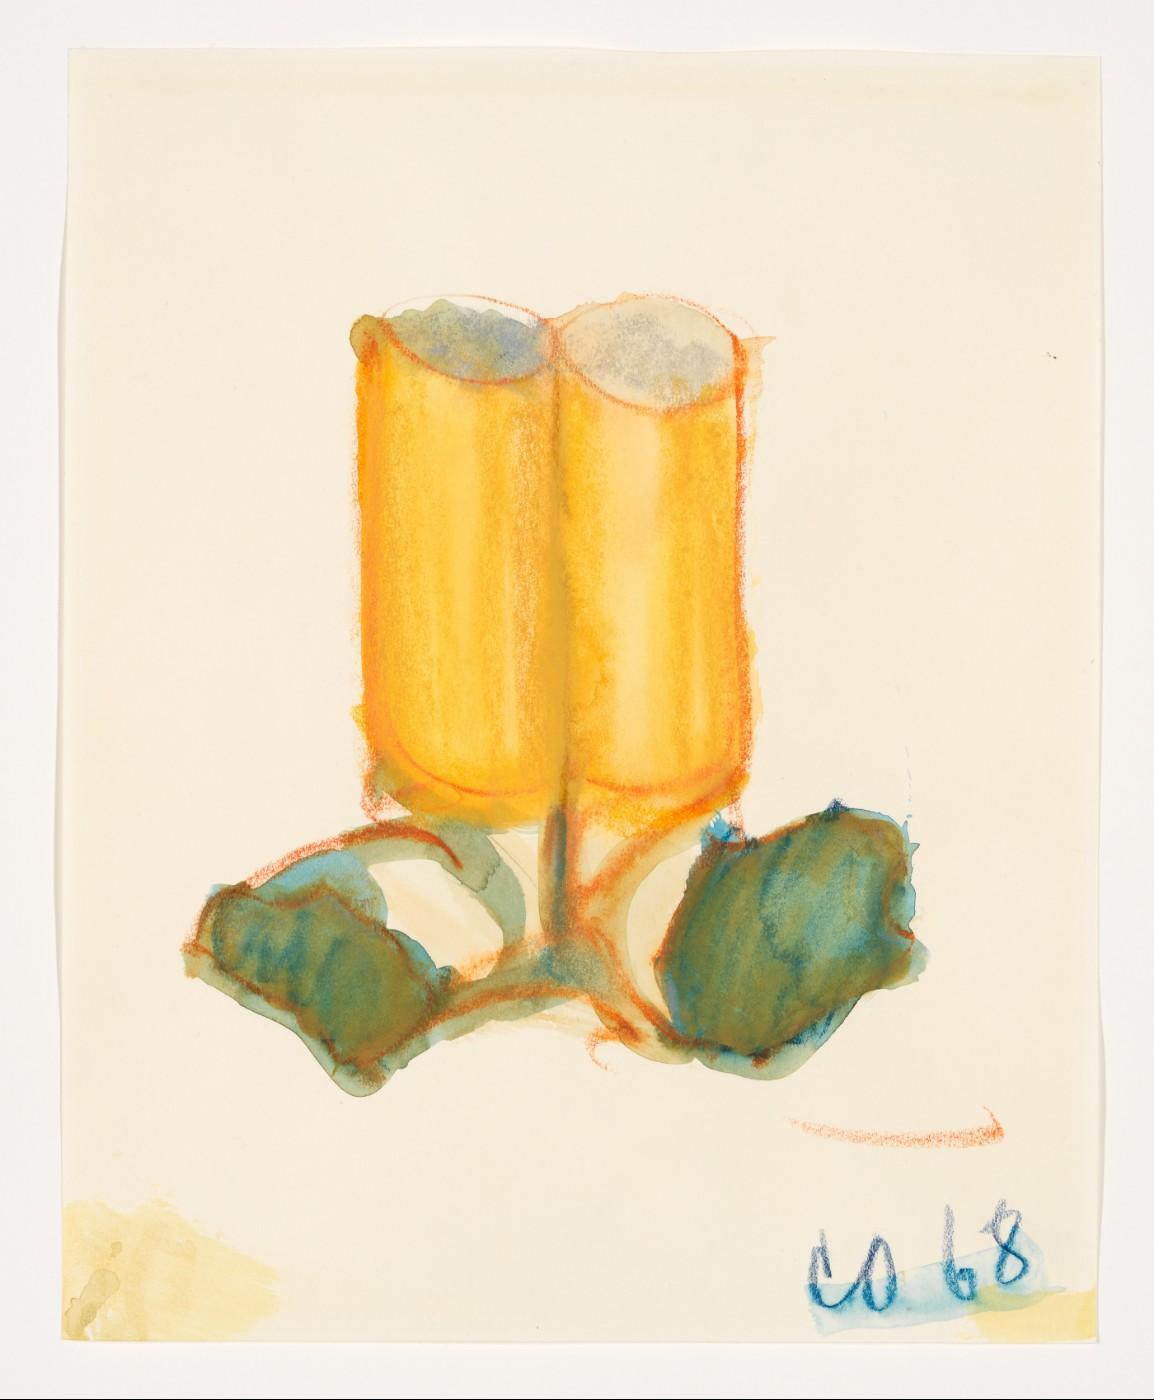 Claes Oldenburg, Two Fagends Together, ll, 1968